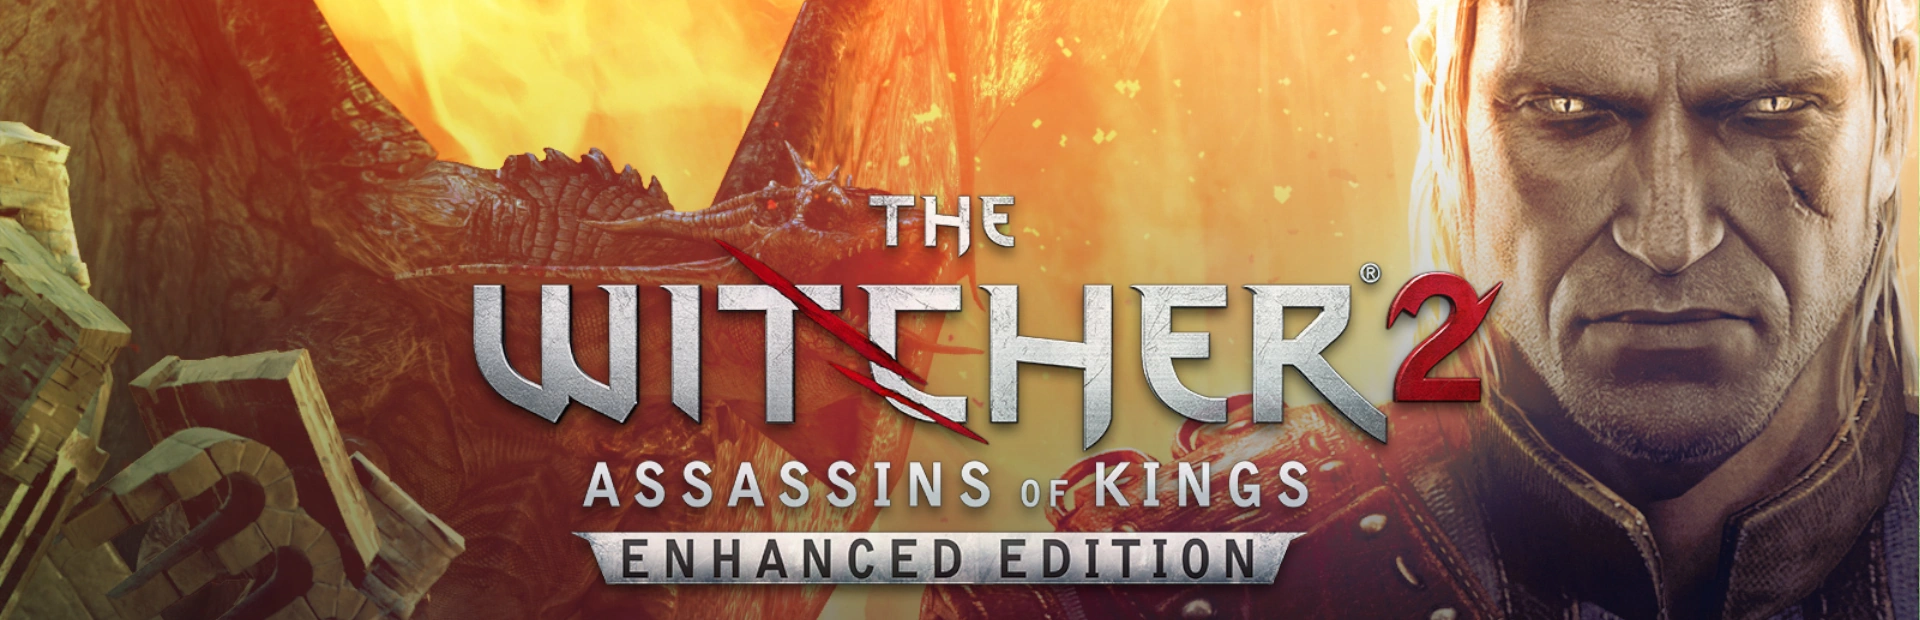 دانلود بازی The Witcher 2: Assassin's of Kings برای کامپیوتر